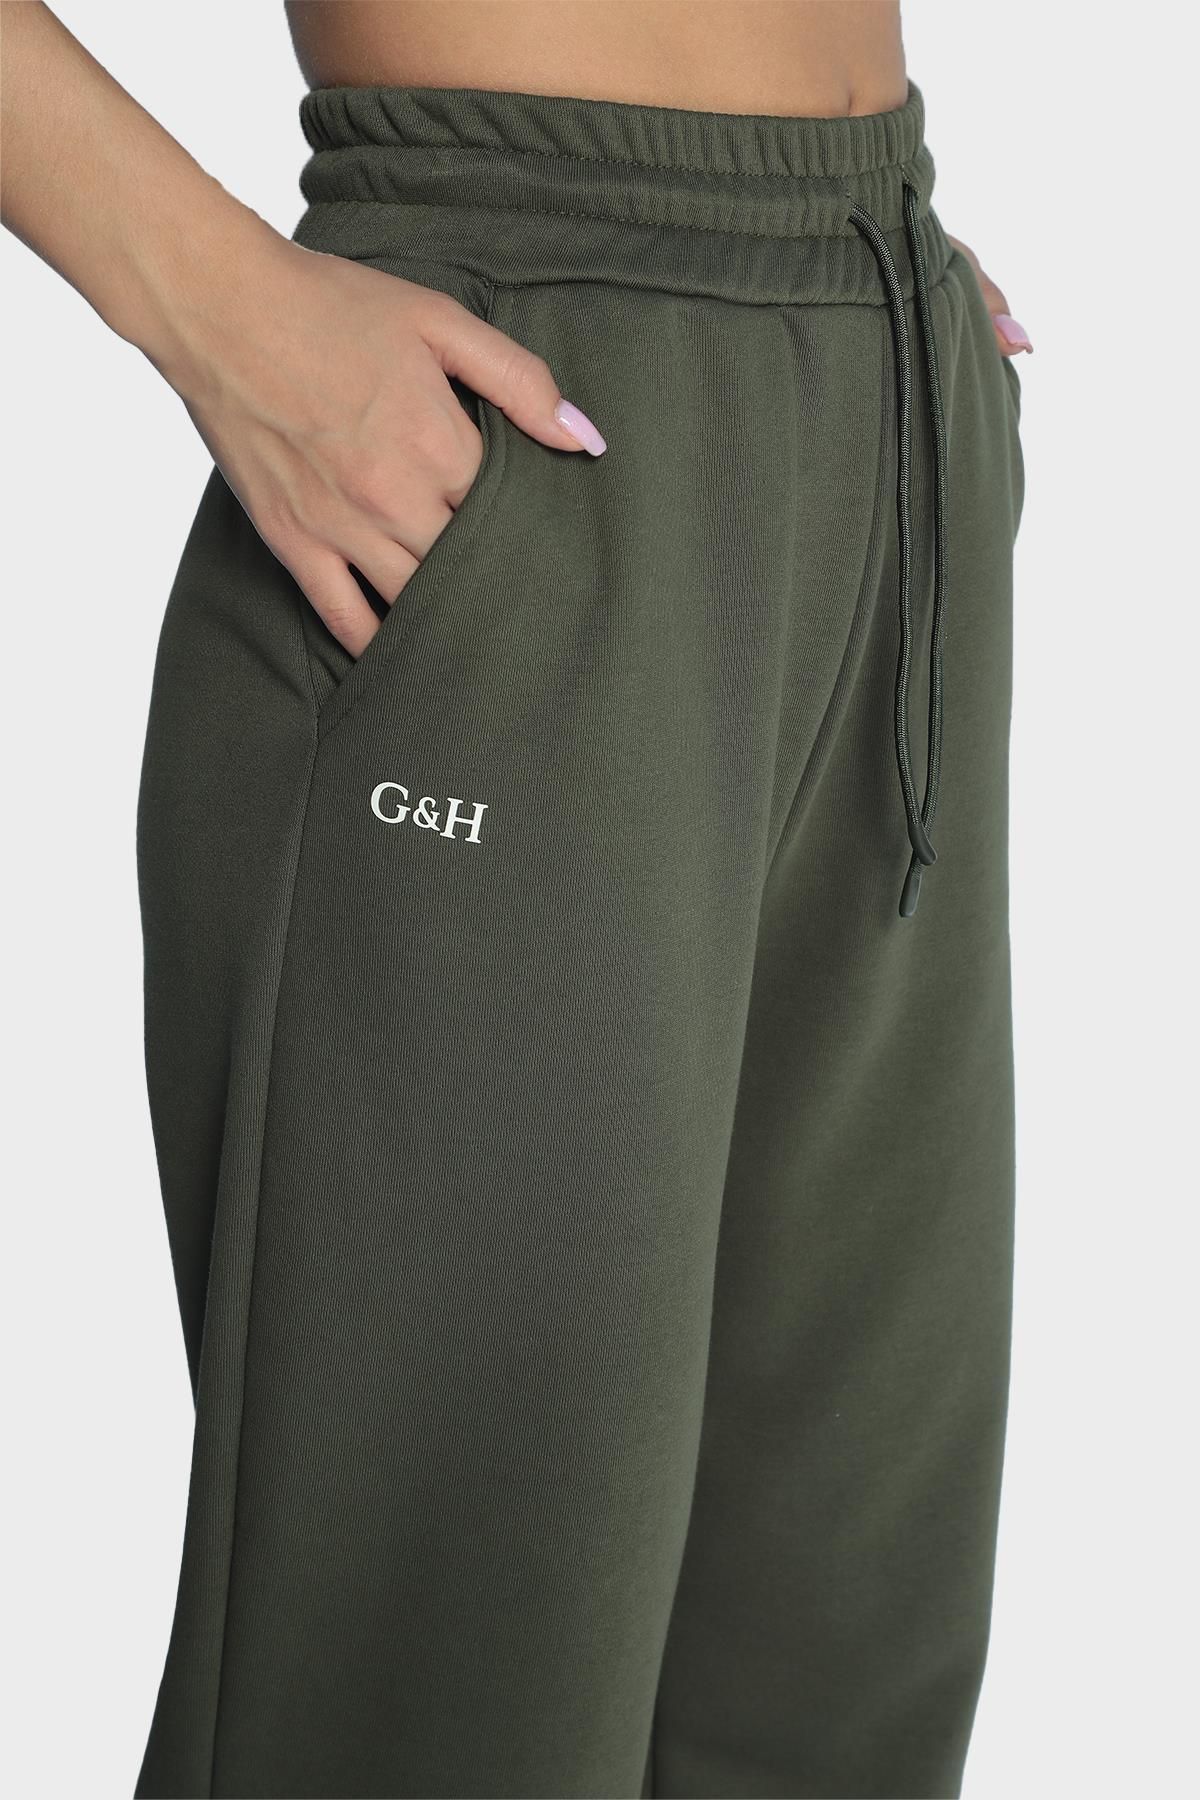 Женские широкие спортивные штаны с эластичной талией - Хаки